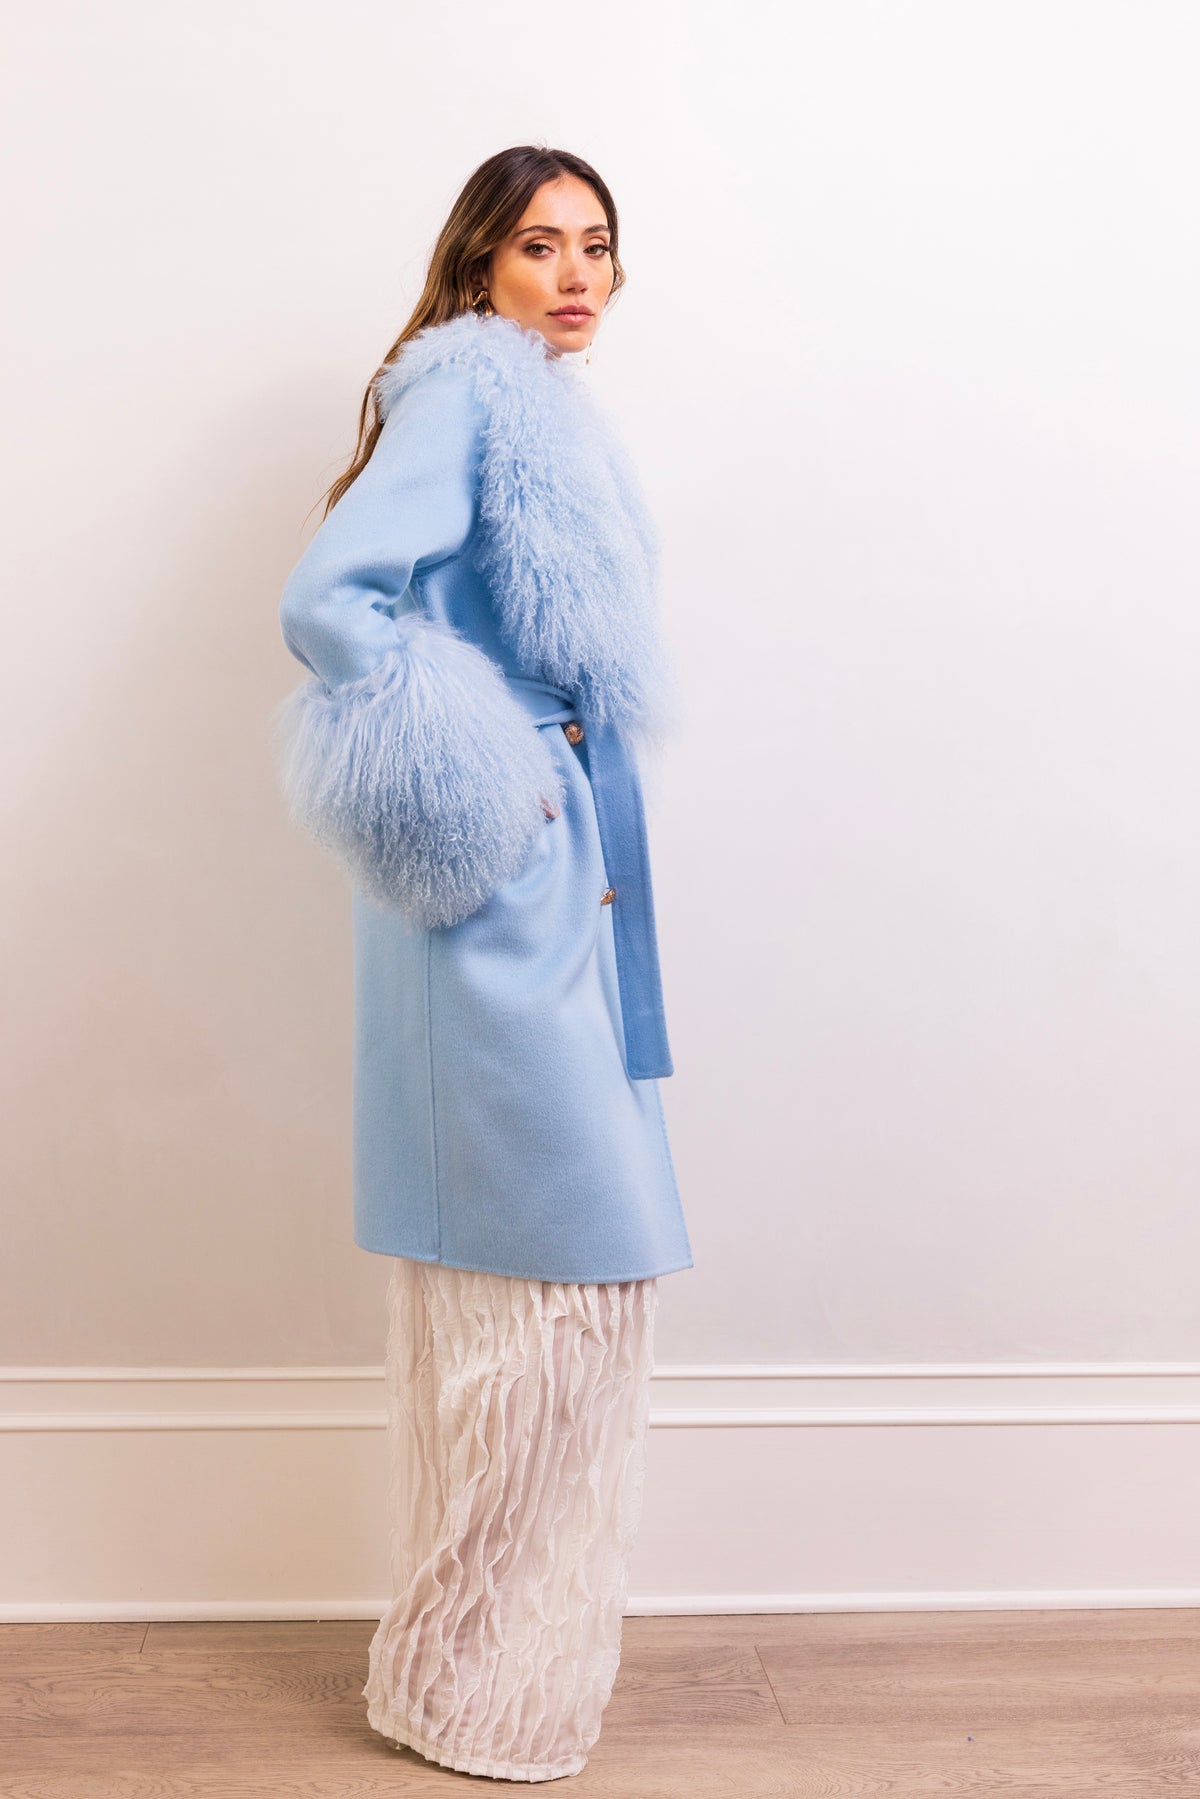 Charlotte Mongolian Wool Coat in Baby Blue